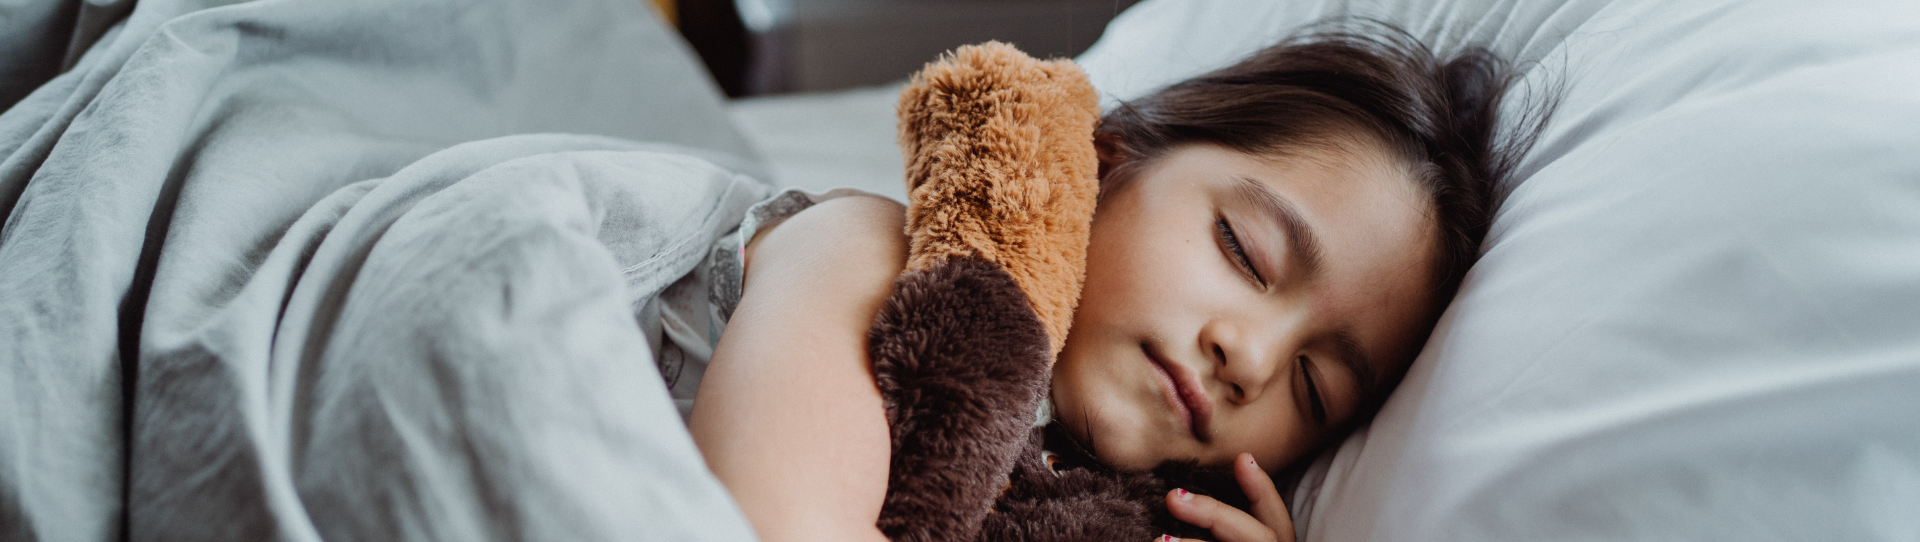 Secrets pour endormir vos enfants pendant leur routine de retour à l'école